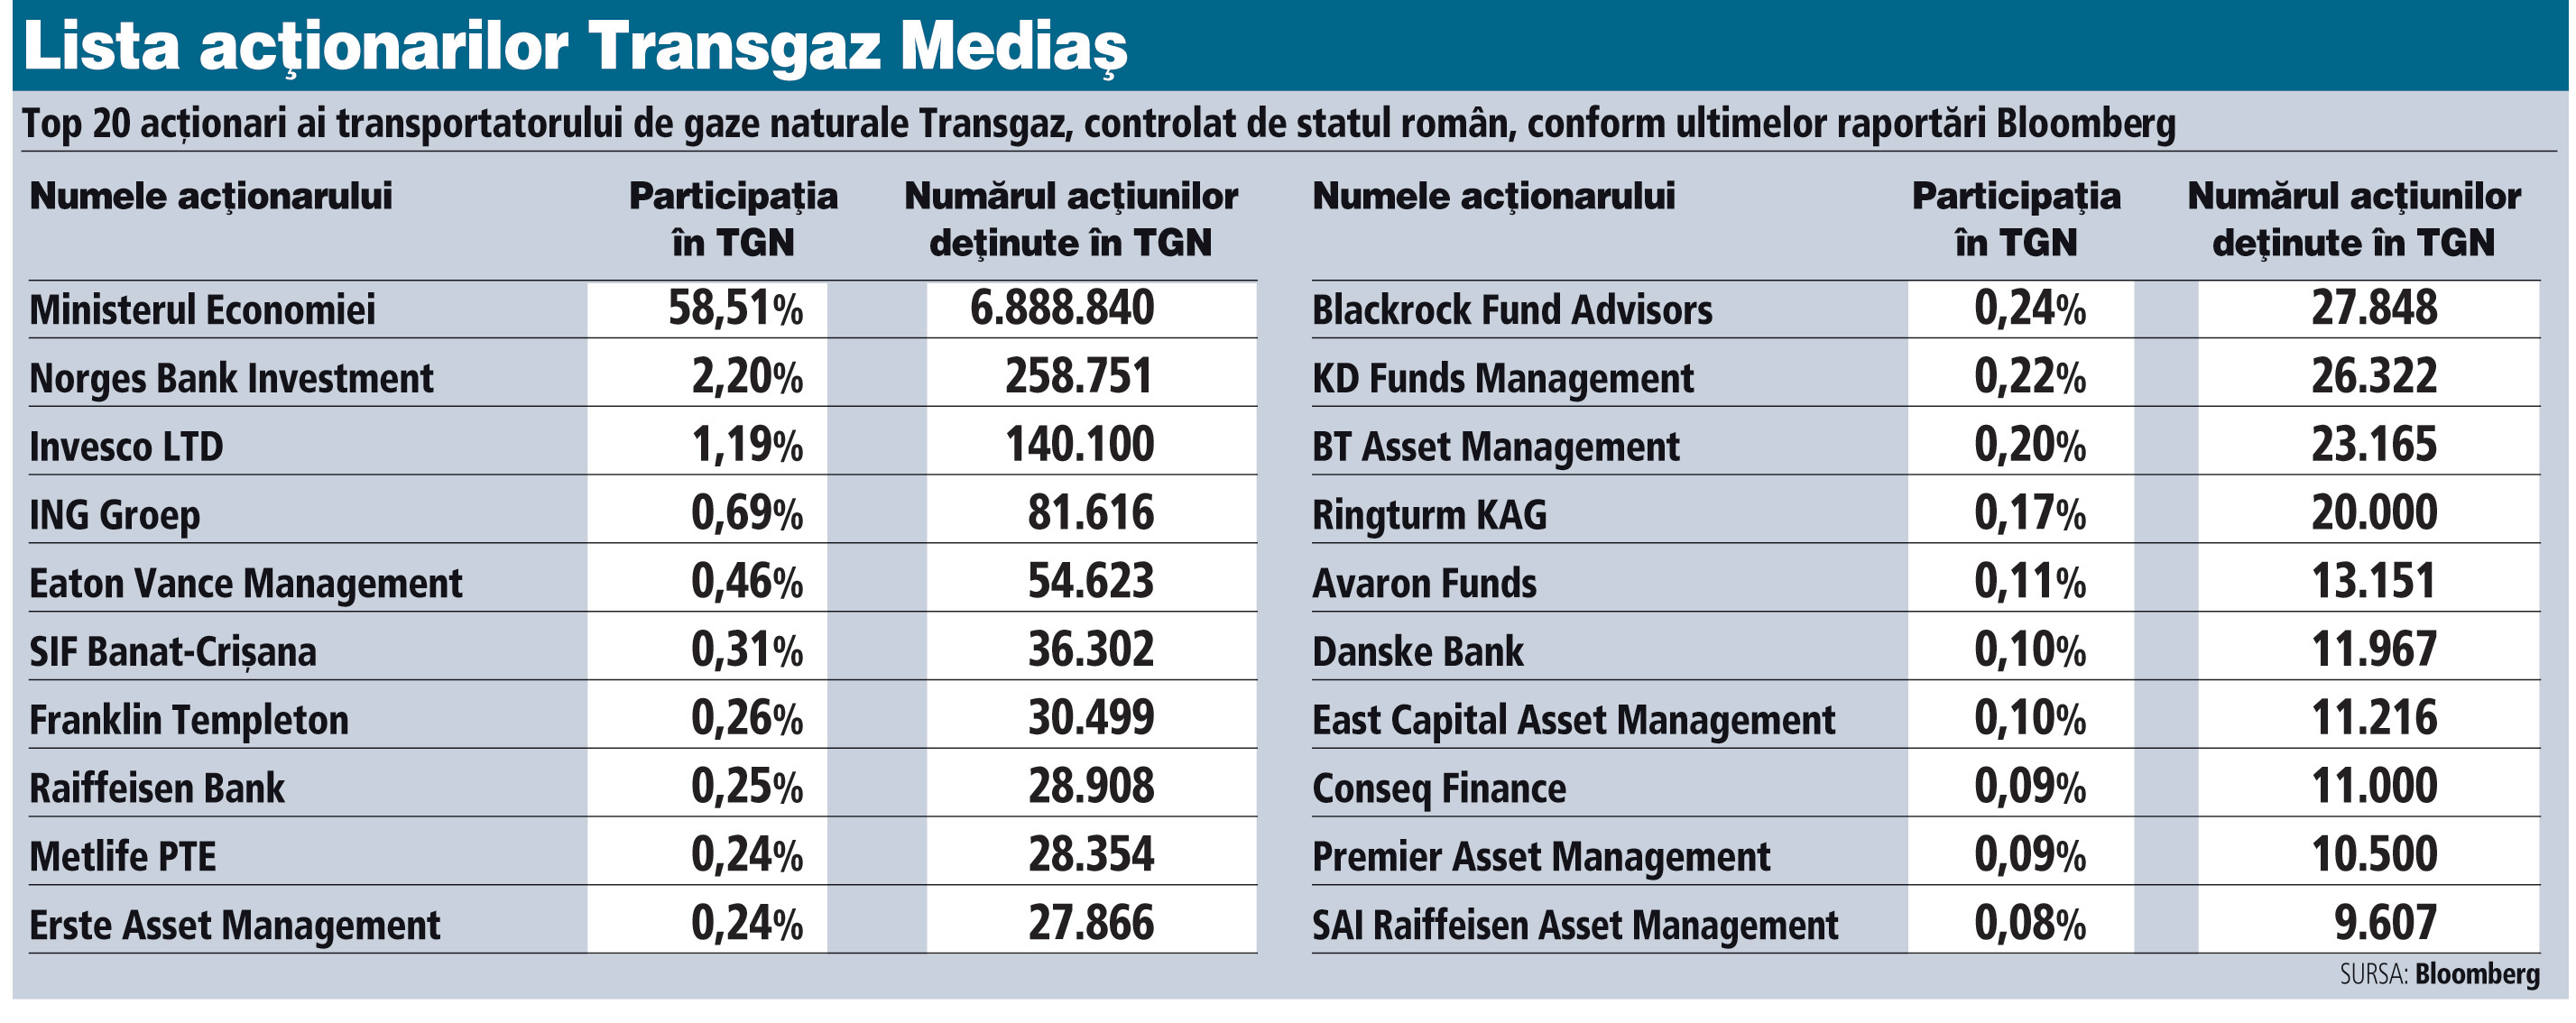 Fonduri de investiţii care administrează sute de miliarde de euro se numără printre cei mai importanţi investitori instituţionali la Transgaz